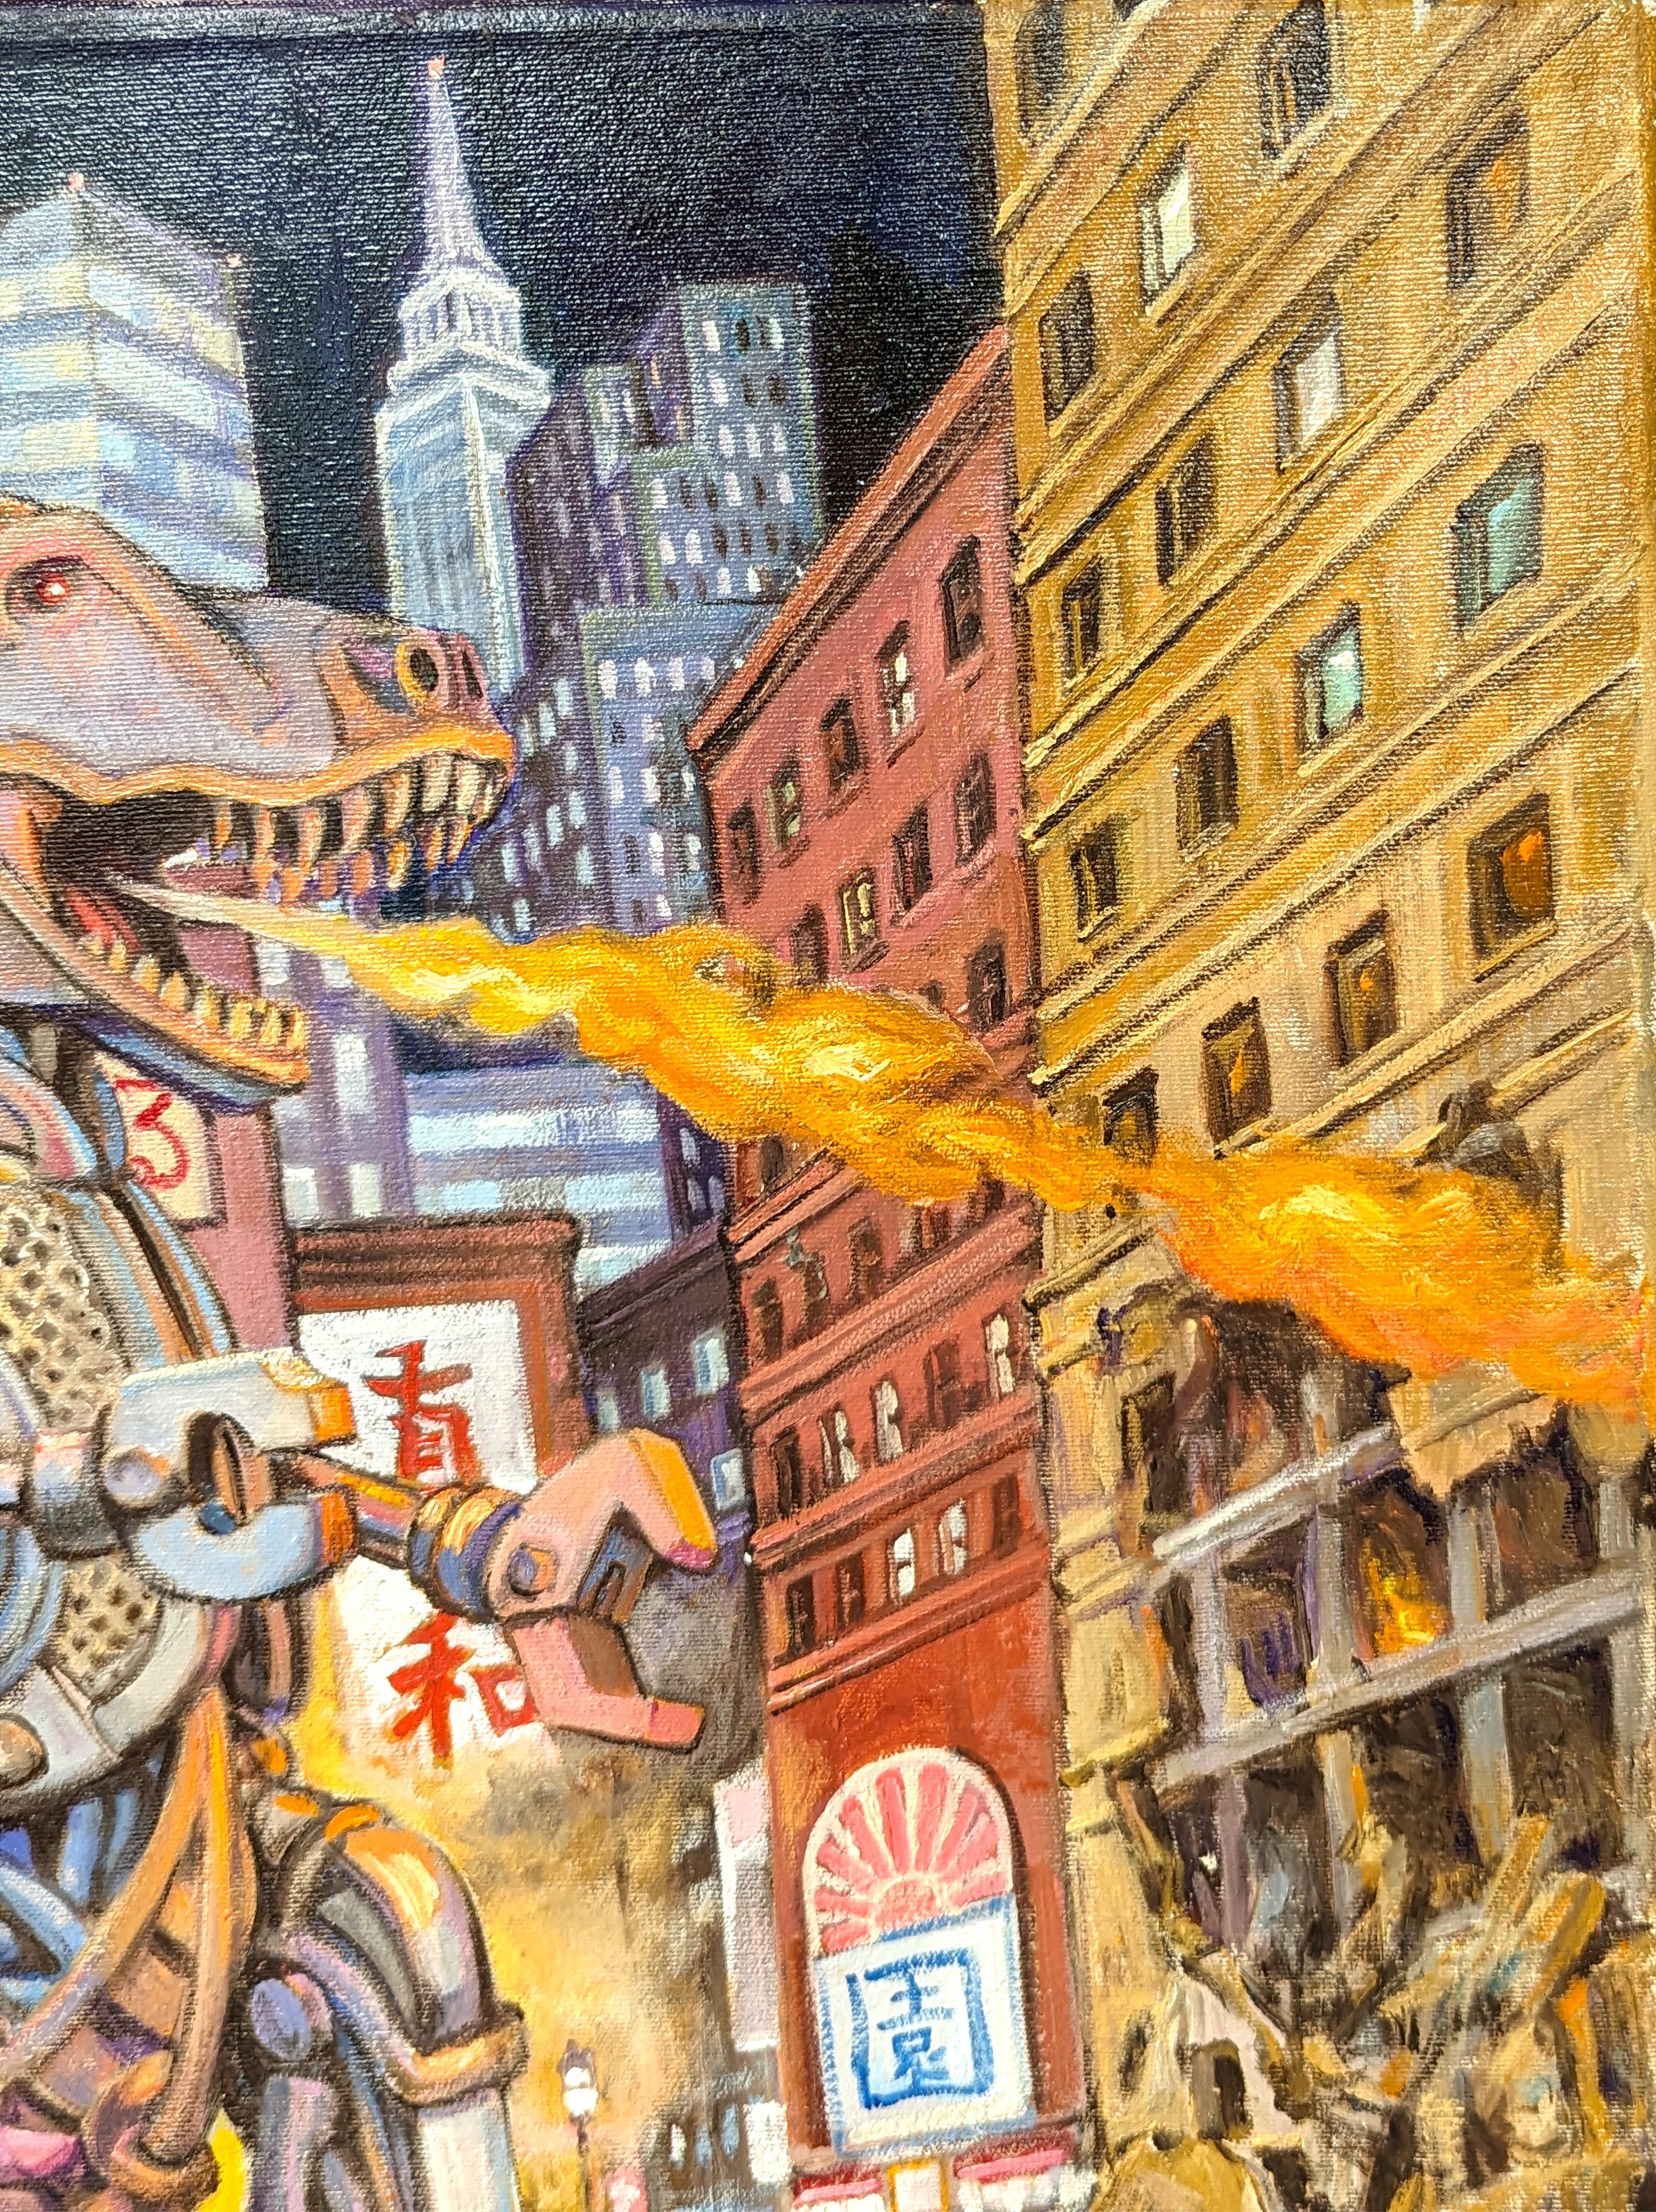 Farbenfrohes Gemälde des zeitgenössischen Künstlers Henry David Potwin. Das Werk zeigt eine metallene, feuerspeiende Godzilla-ähnliche Kreatur, die durch eine städtische Downtown-Landschaft wütet. Signiert in der rechten unteren Ecke der